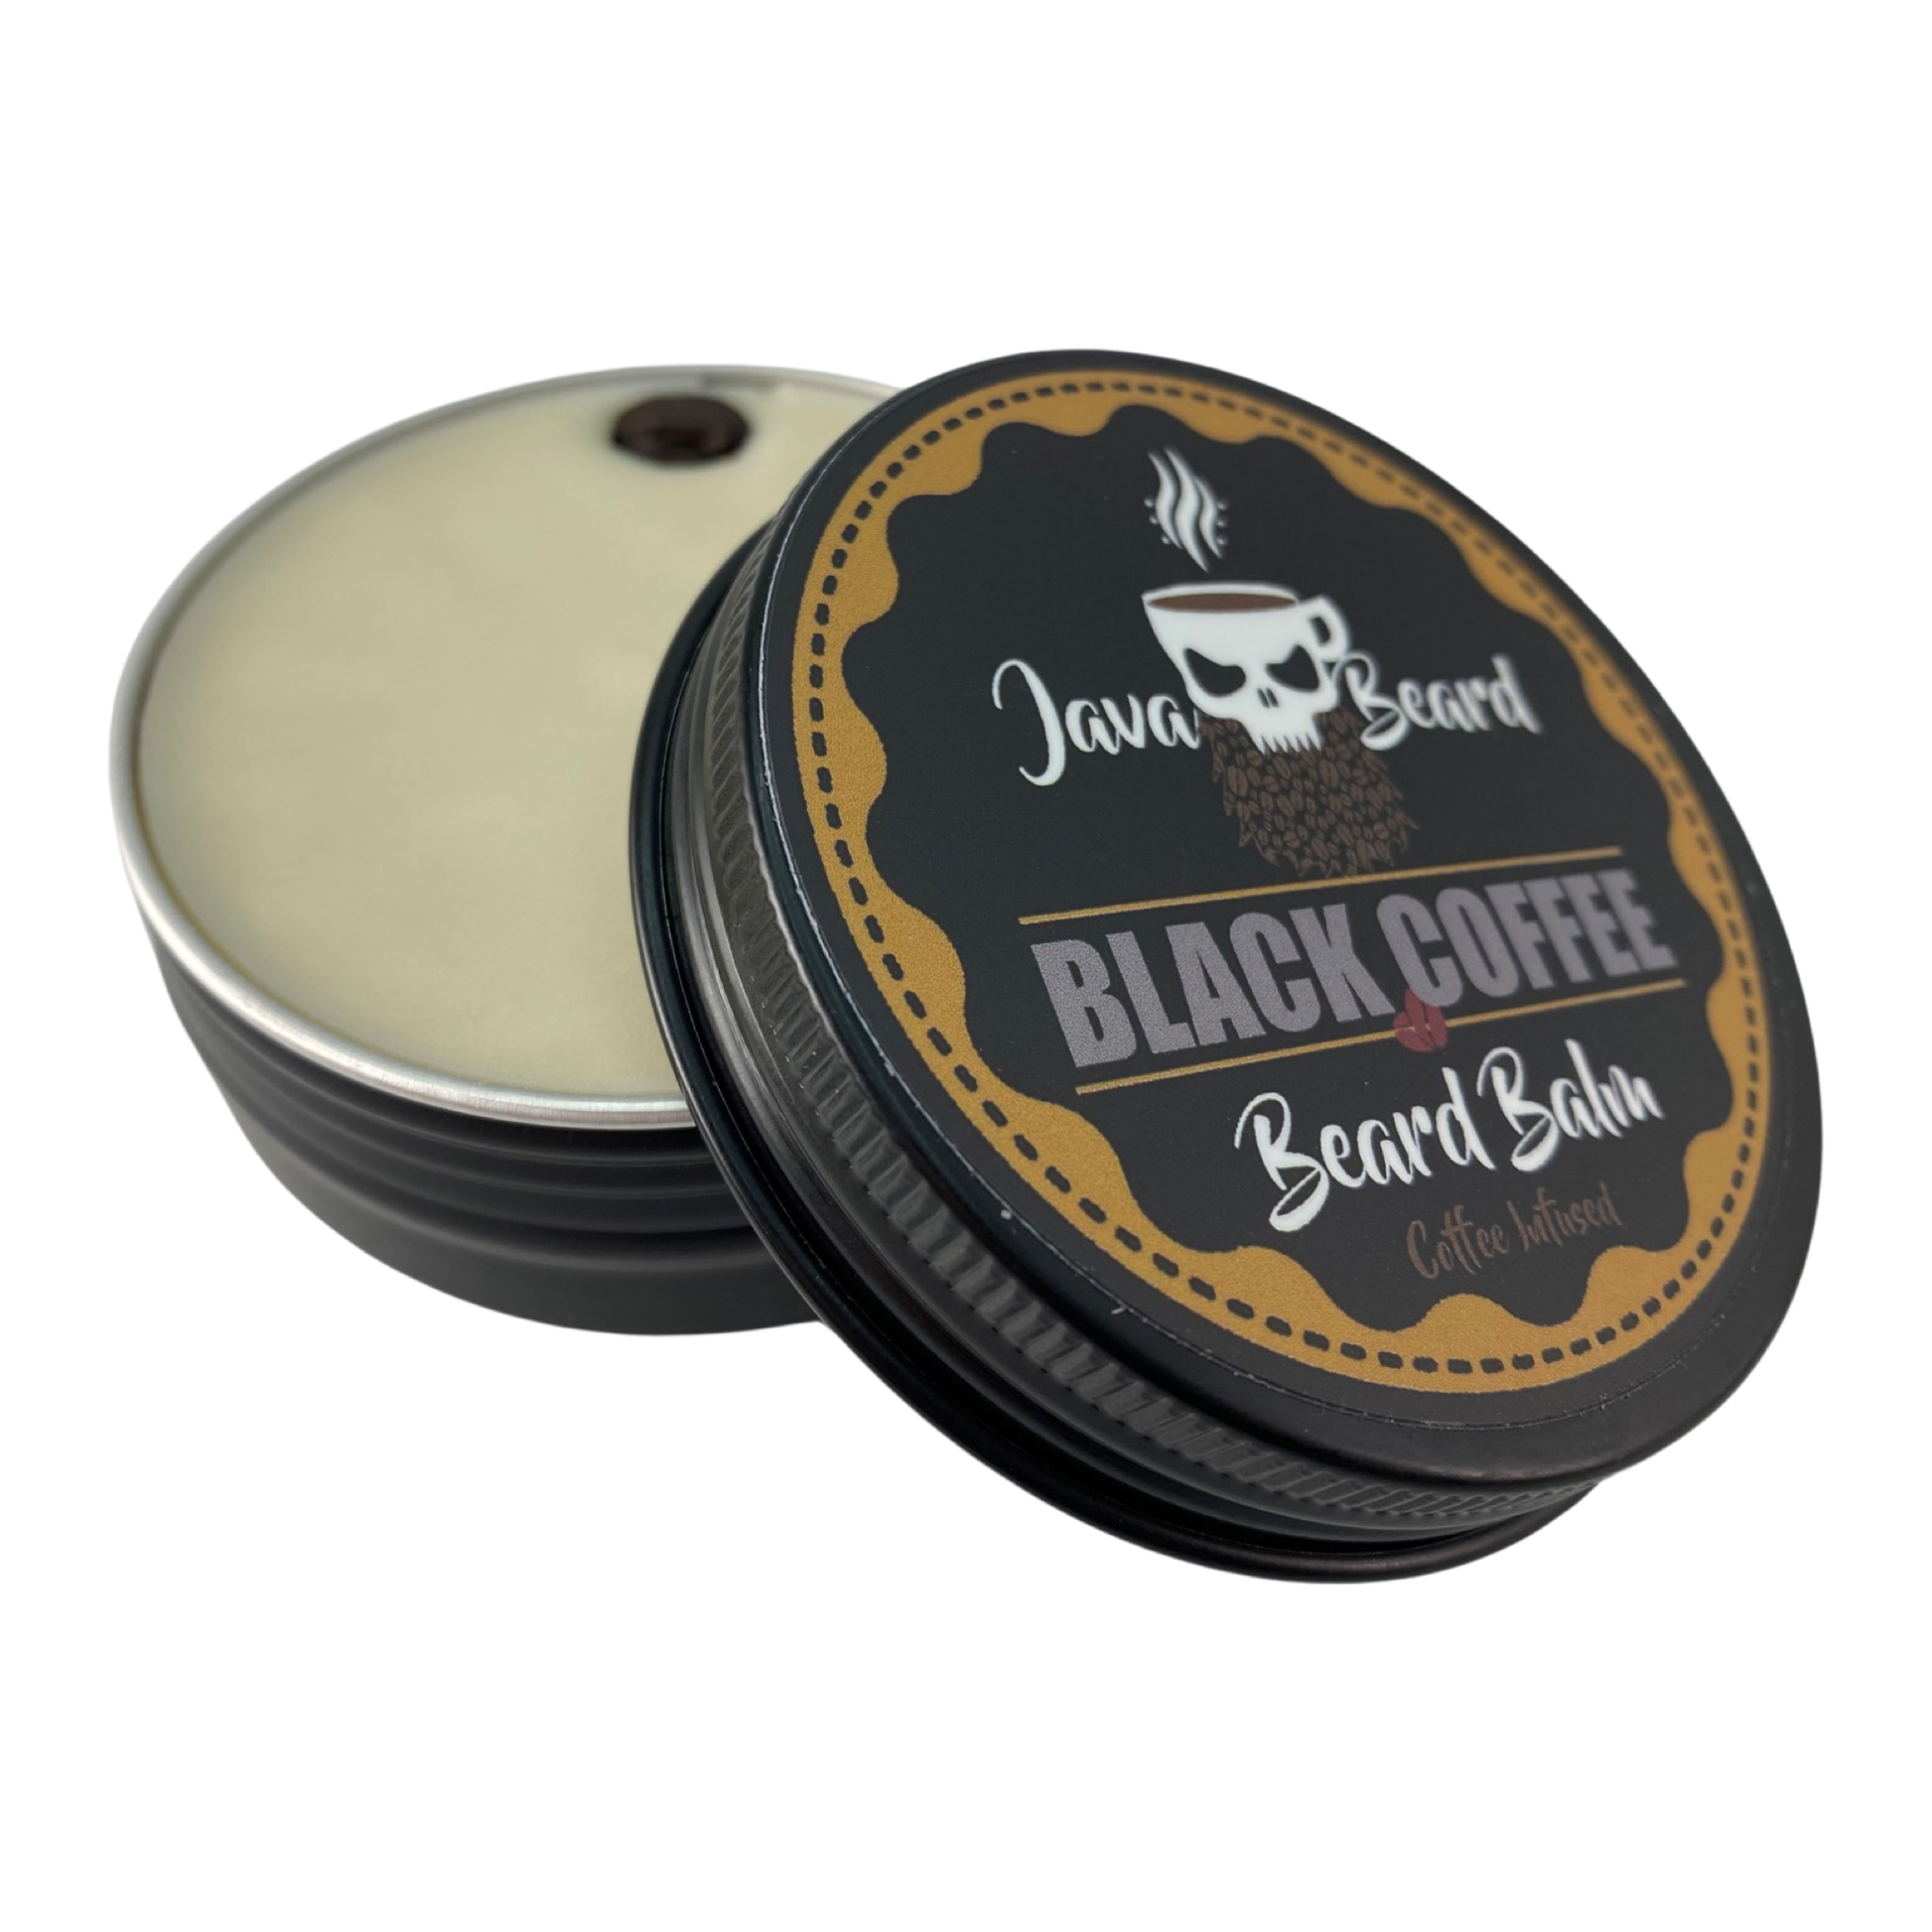 Java Beard Black Coffee Beard Balm